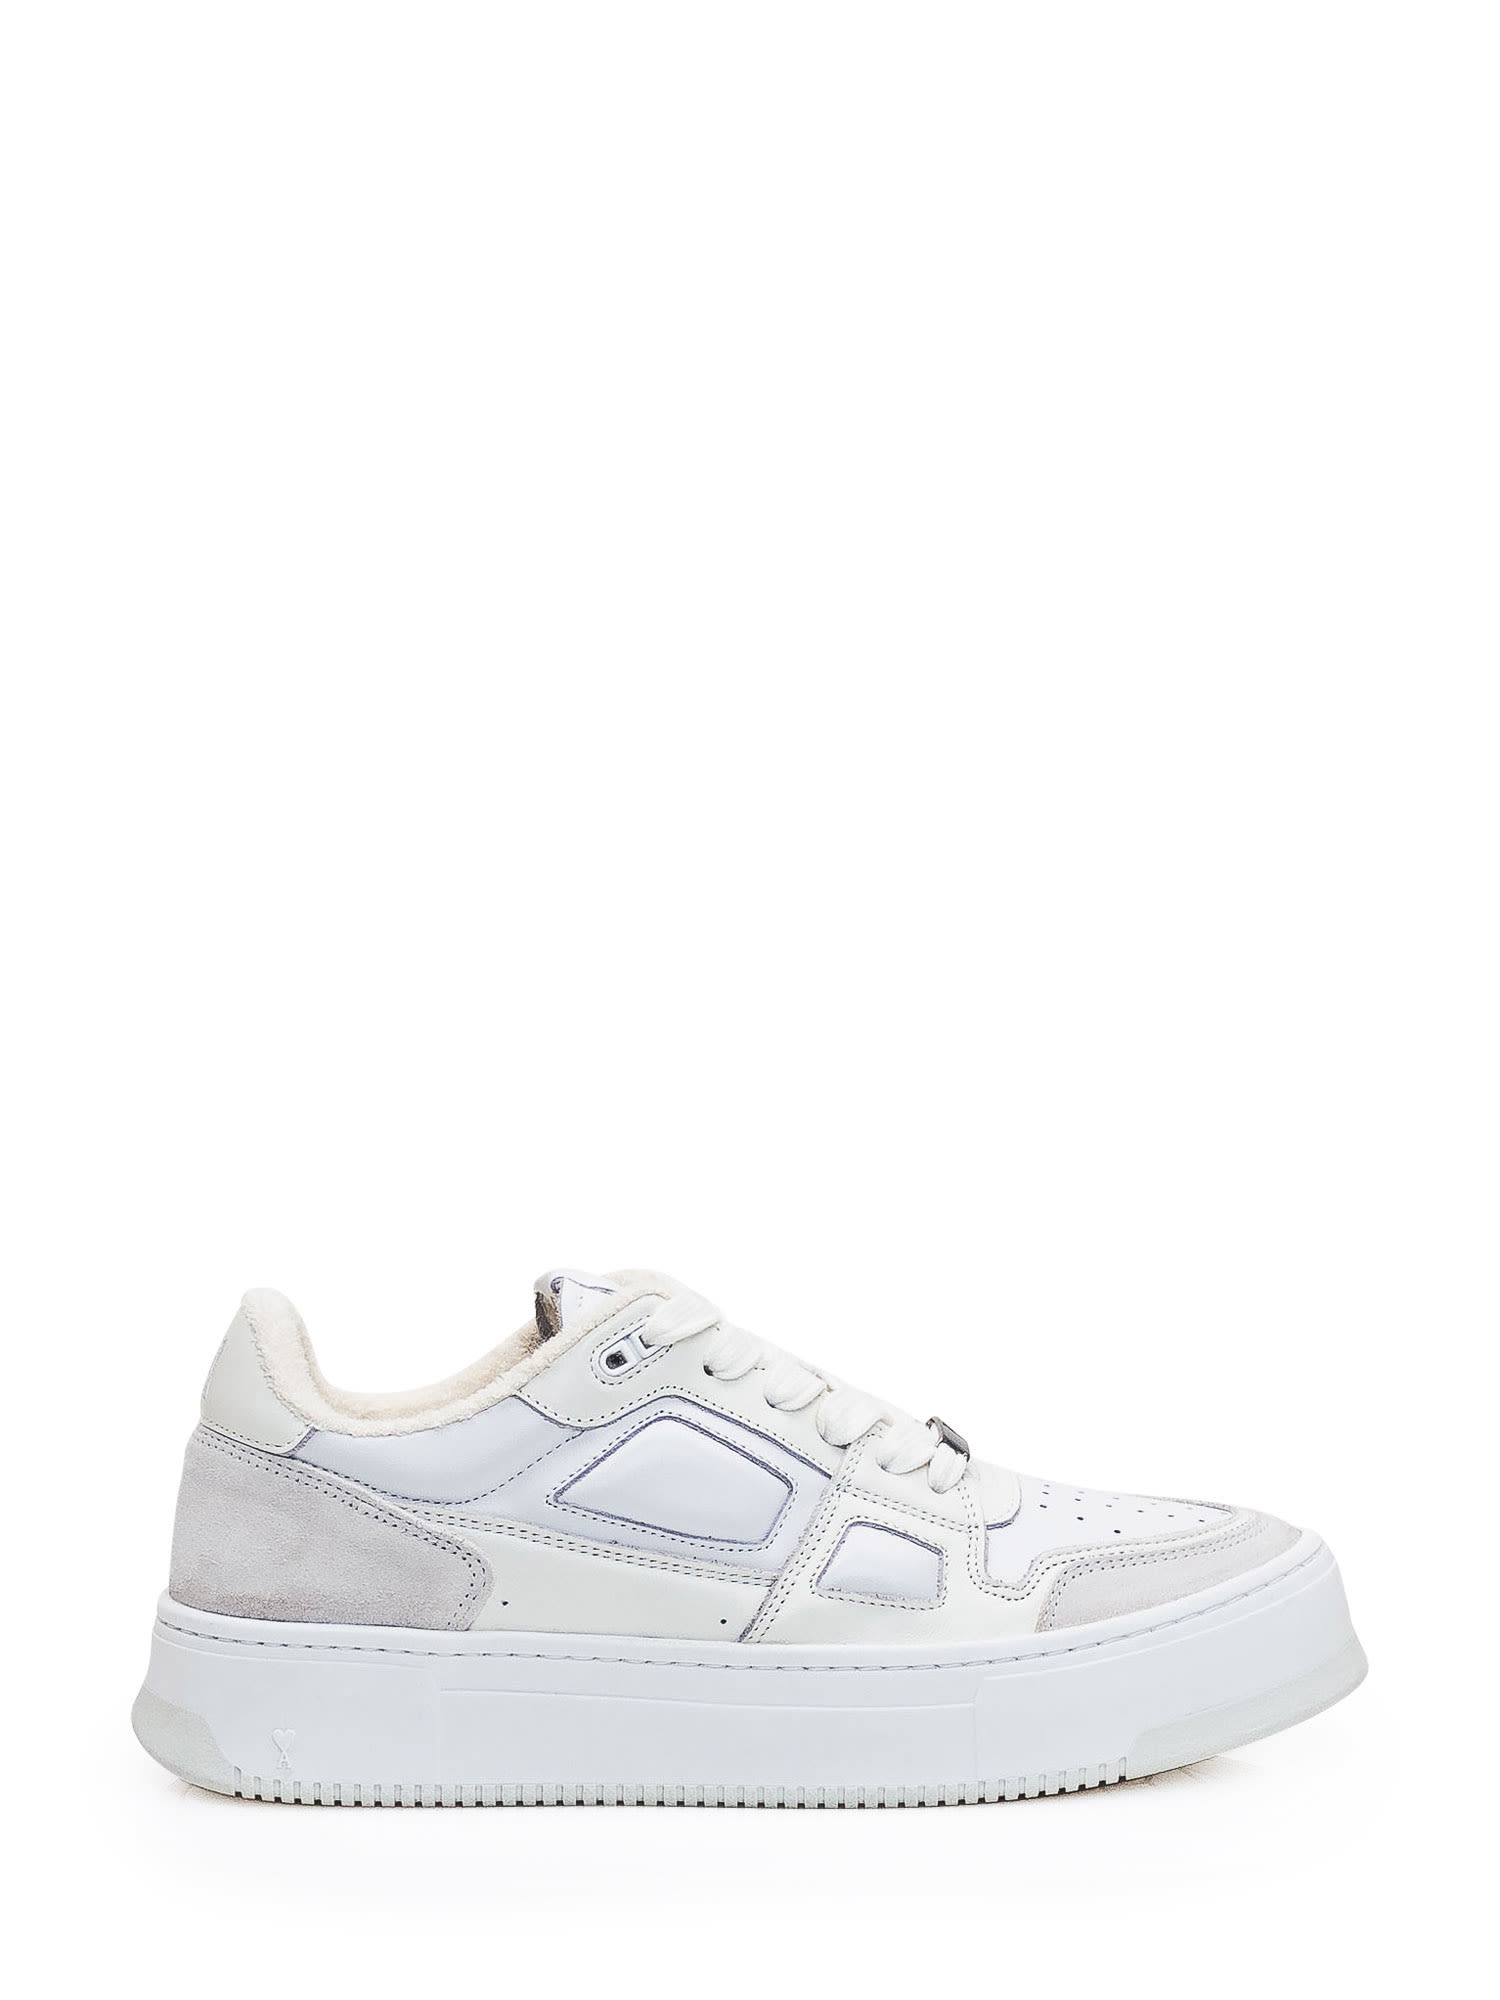 Shop Ami Alexandre Mattiussi New Arcade Sneaker In White/off White